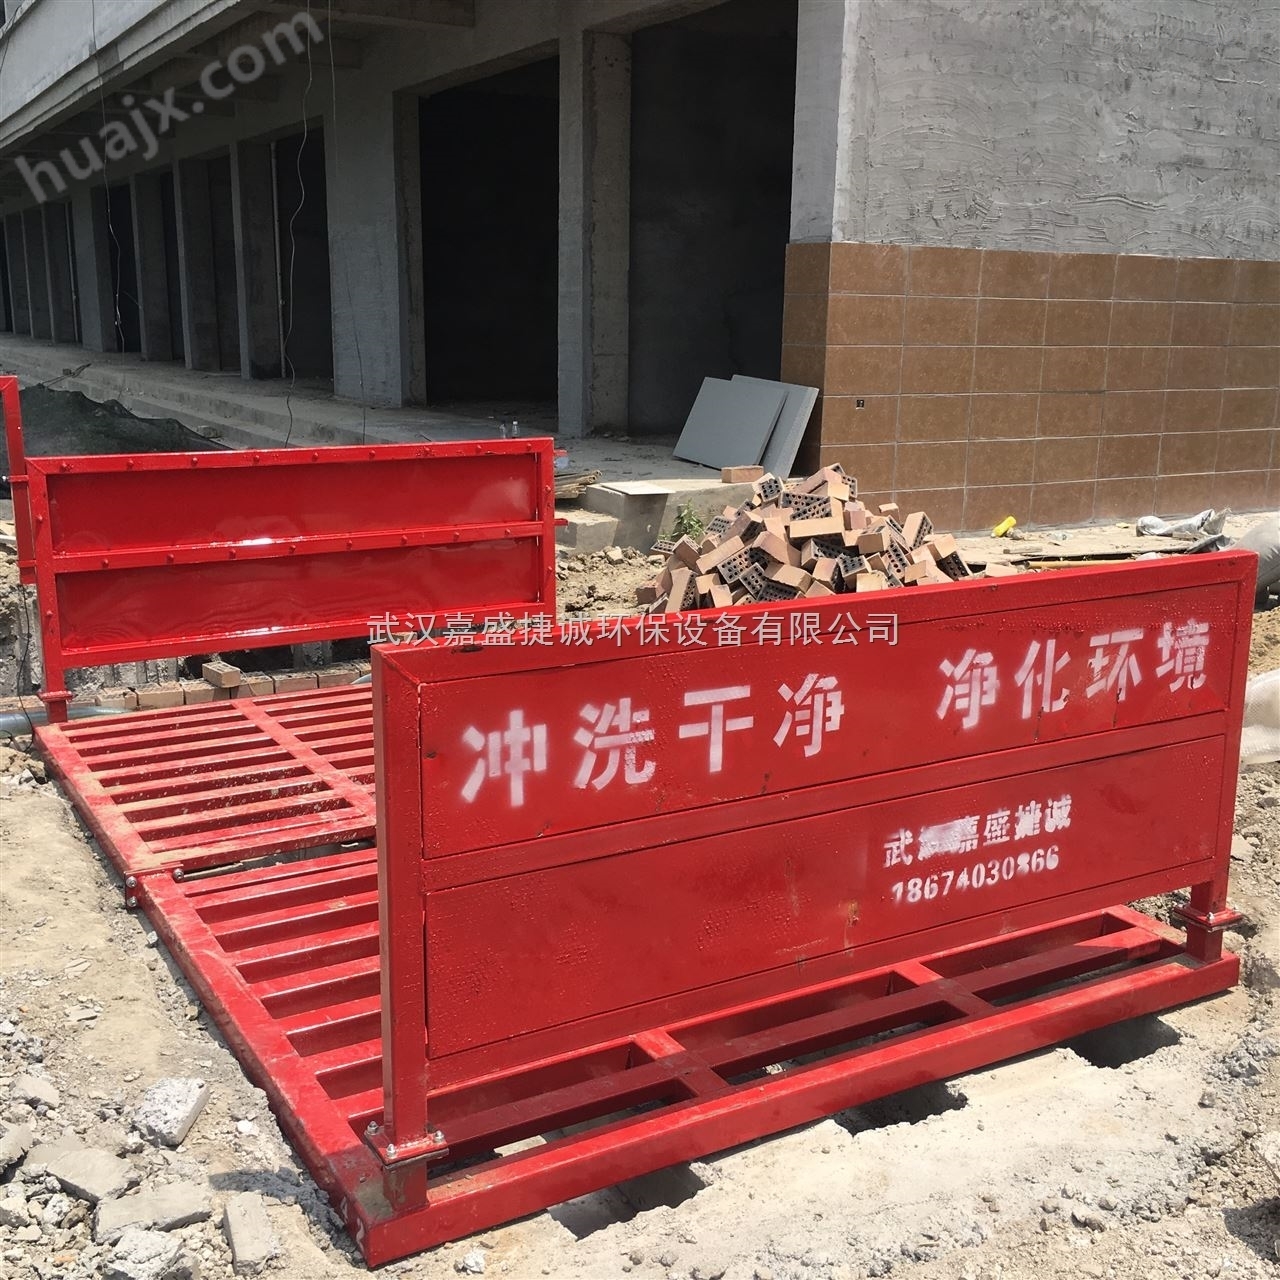 惠州工地渣土车运输车辆自动洗轮机